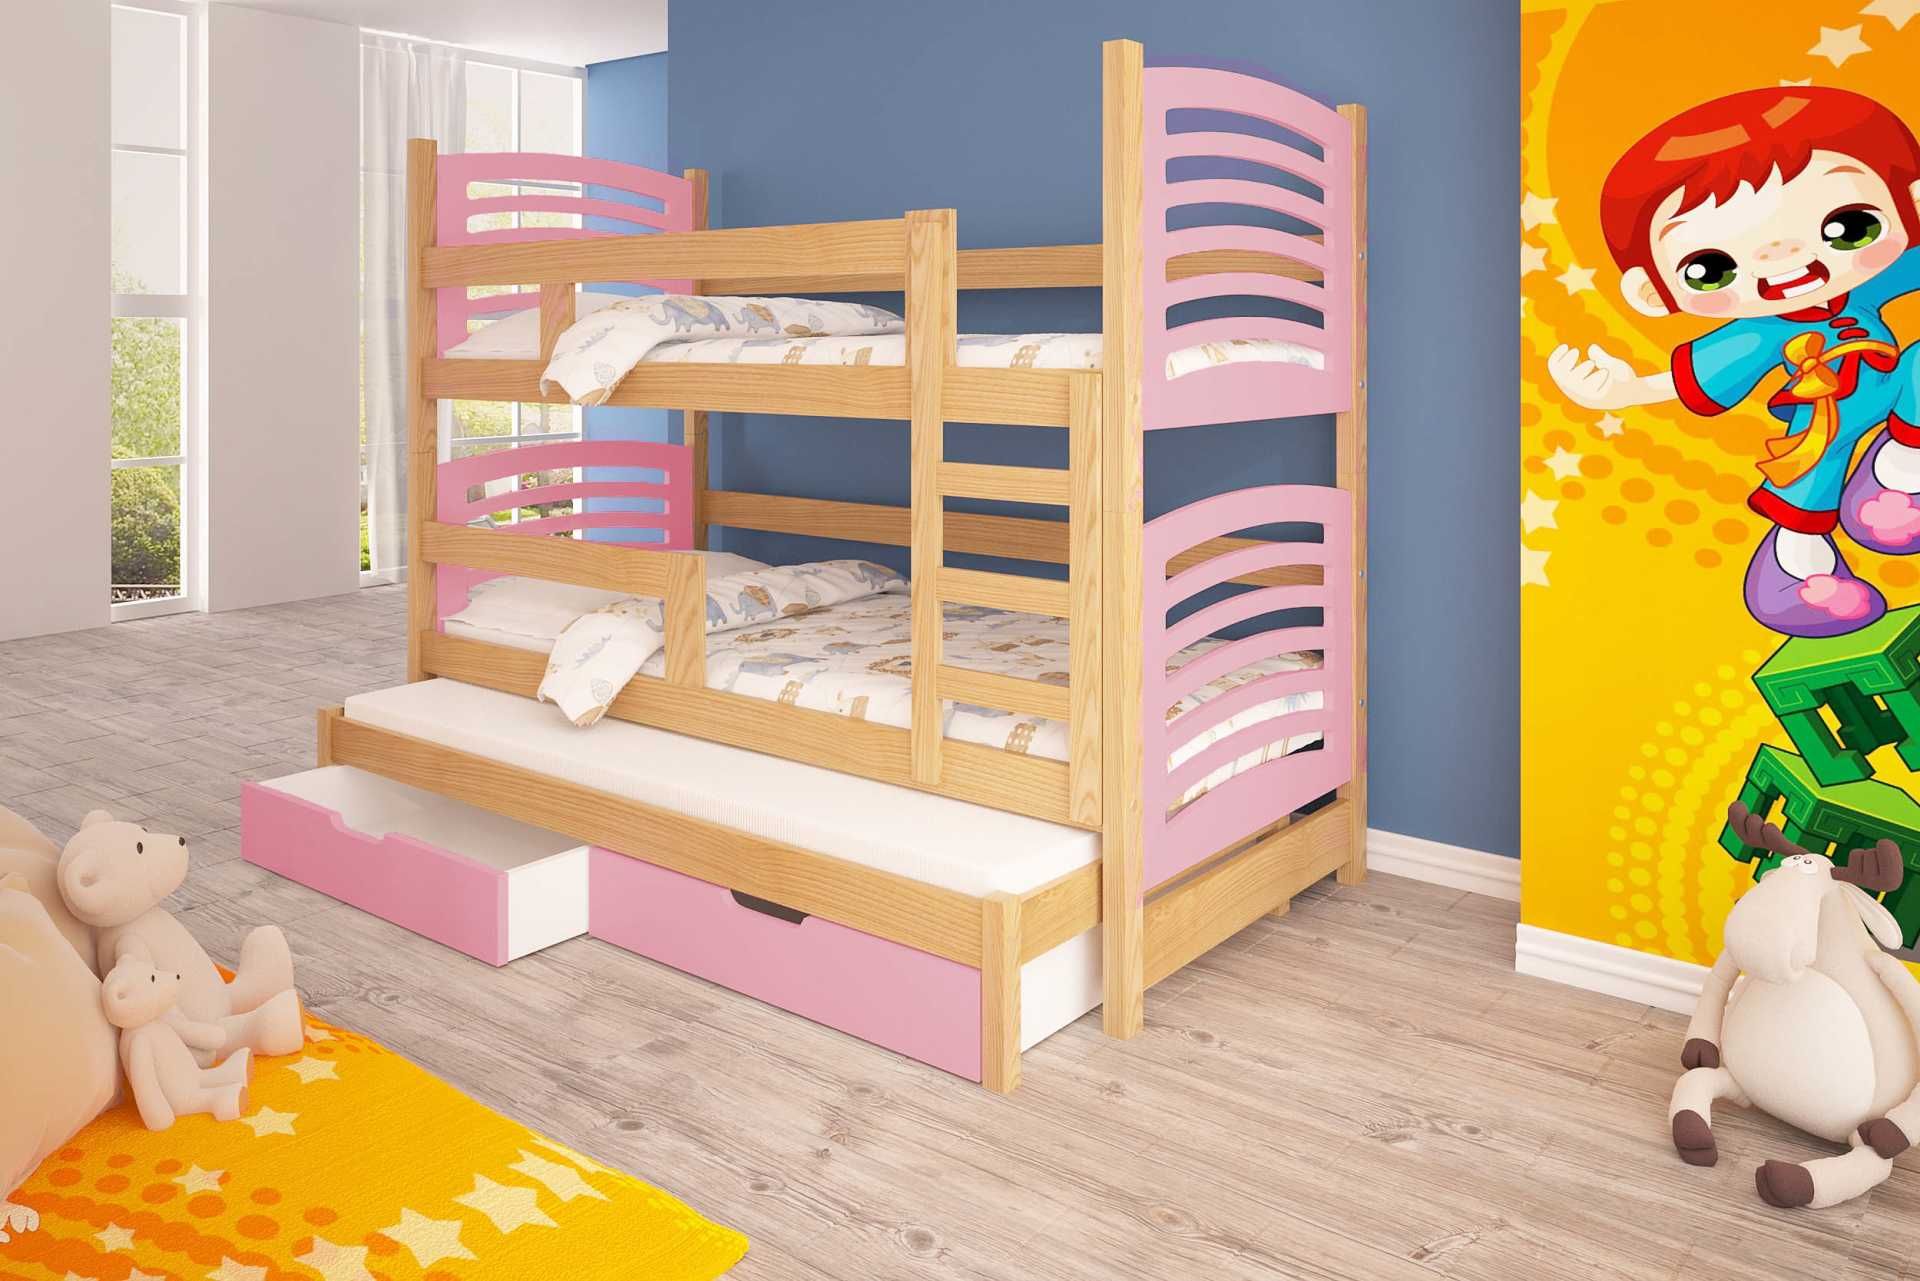 Piętrowe łóżko 3 osobowe Olek! Praktyczne łóżko dla dzieci